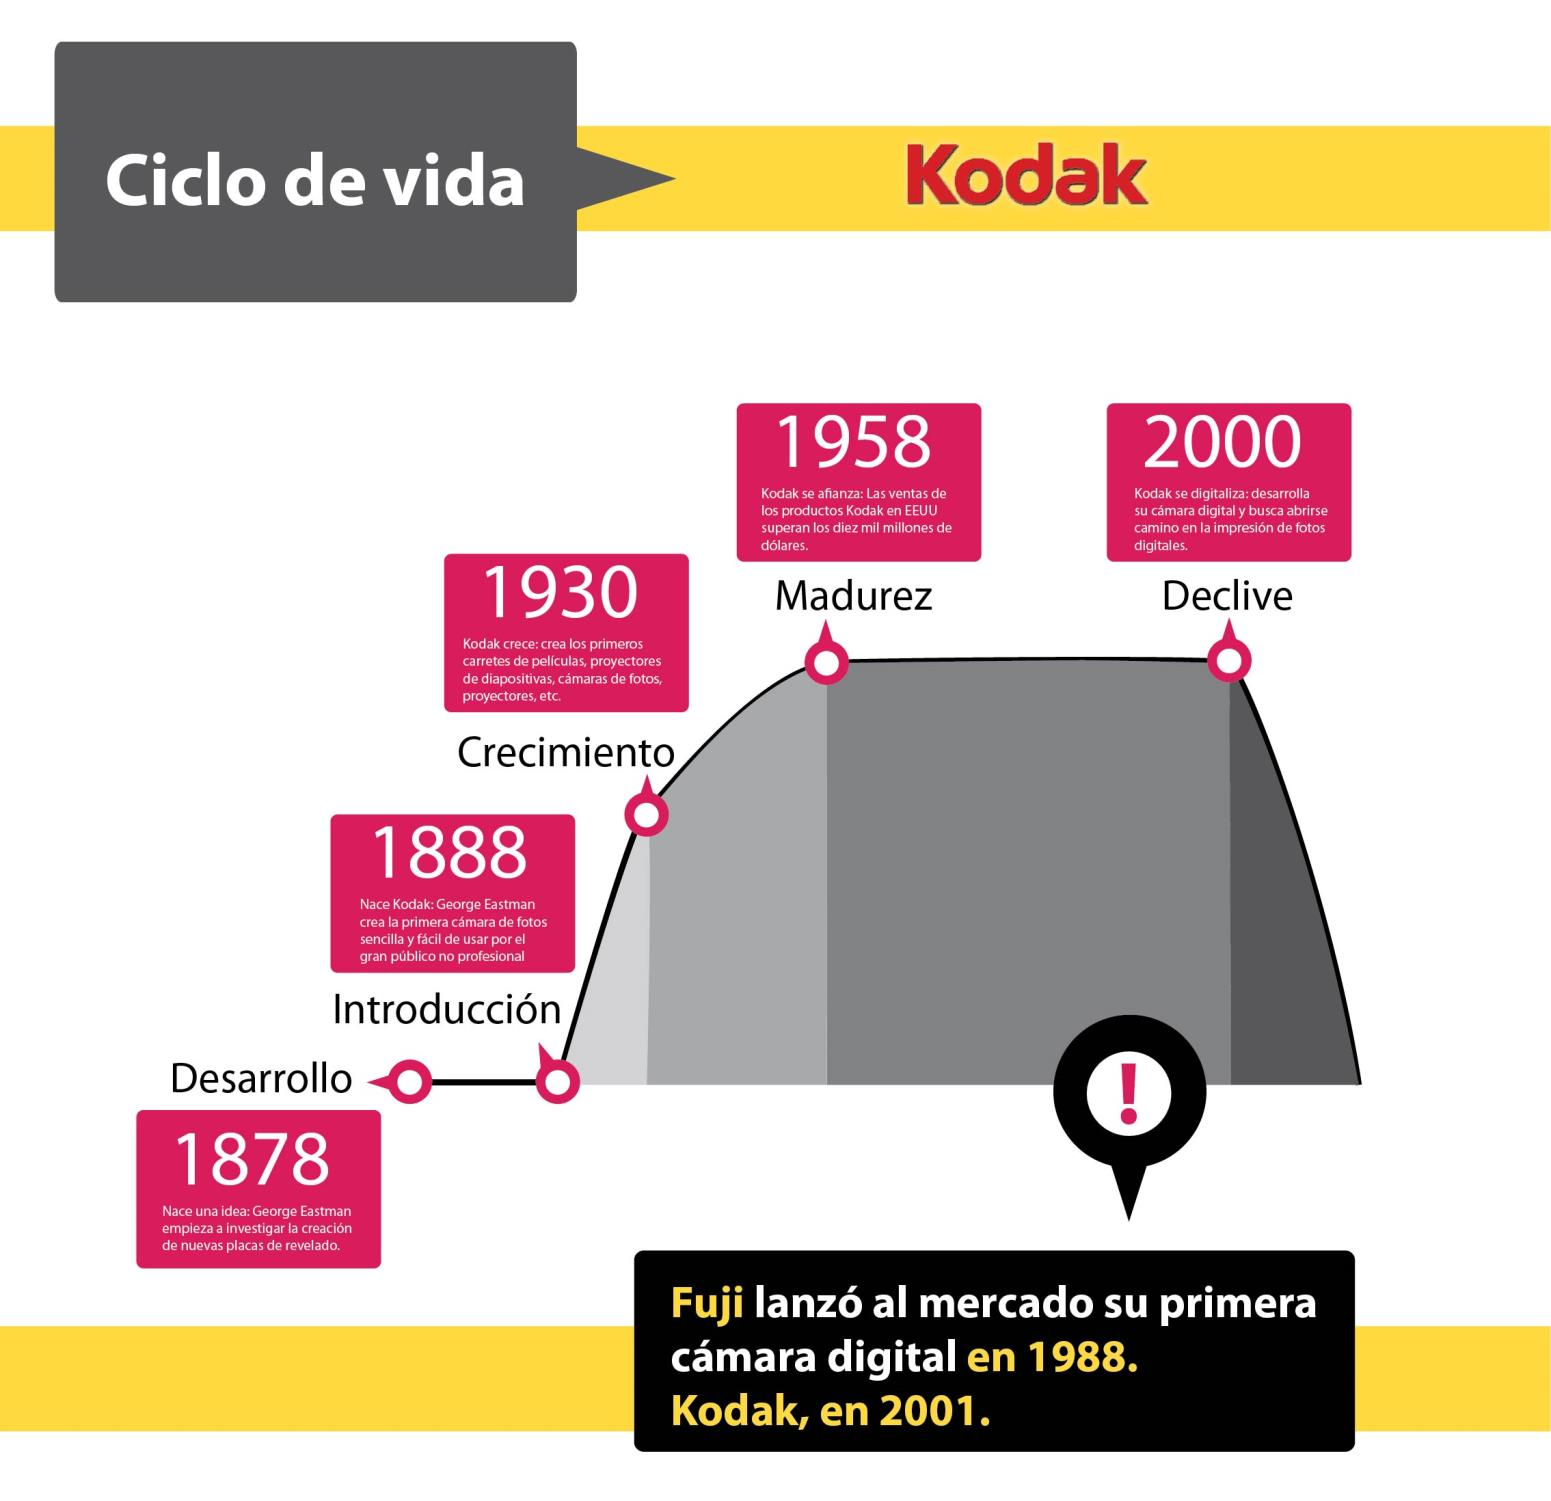 1930 Kodak cresce: cria os primeiros carretéis para filmes, projetores, câmeras de fotos,etc.